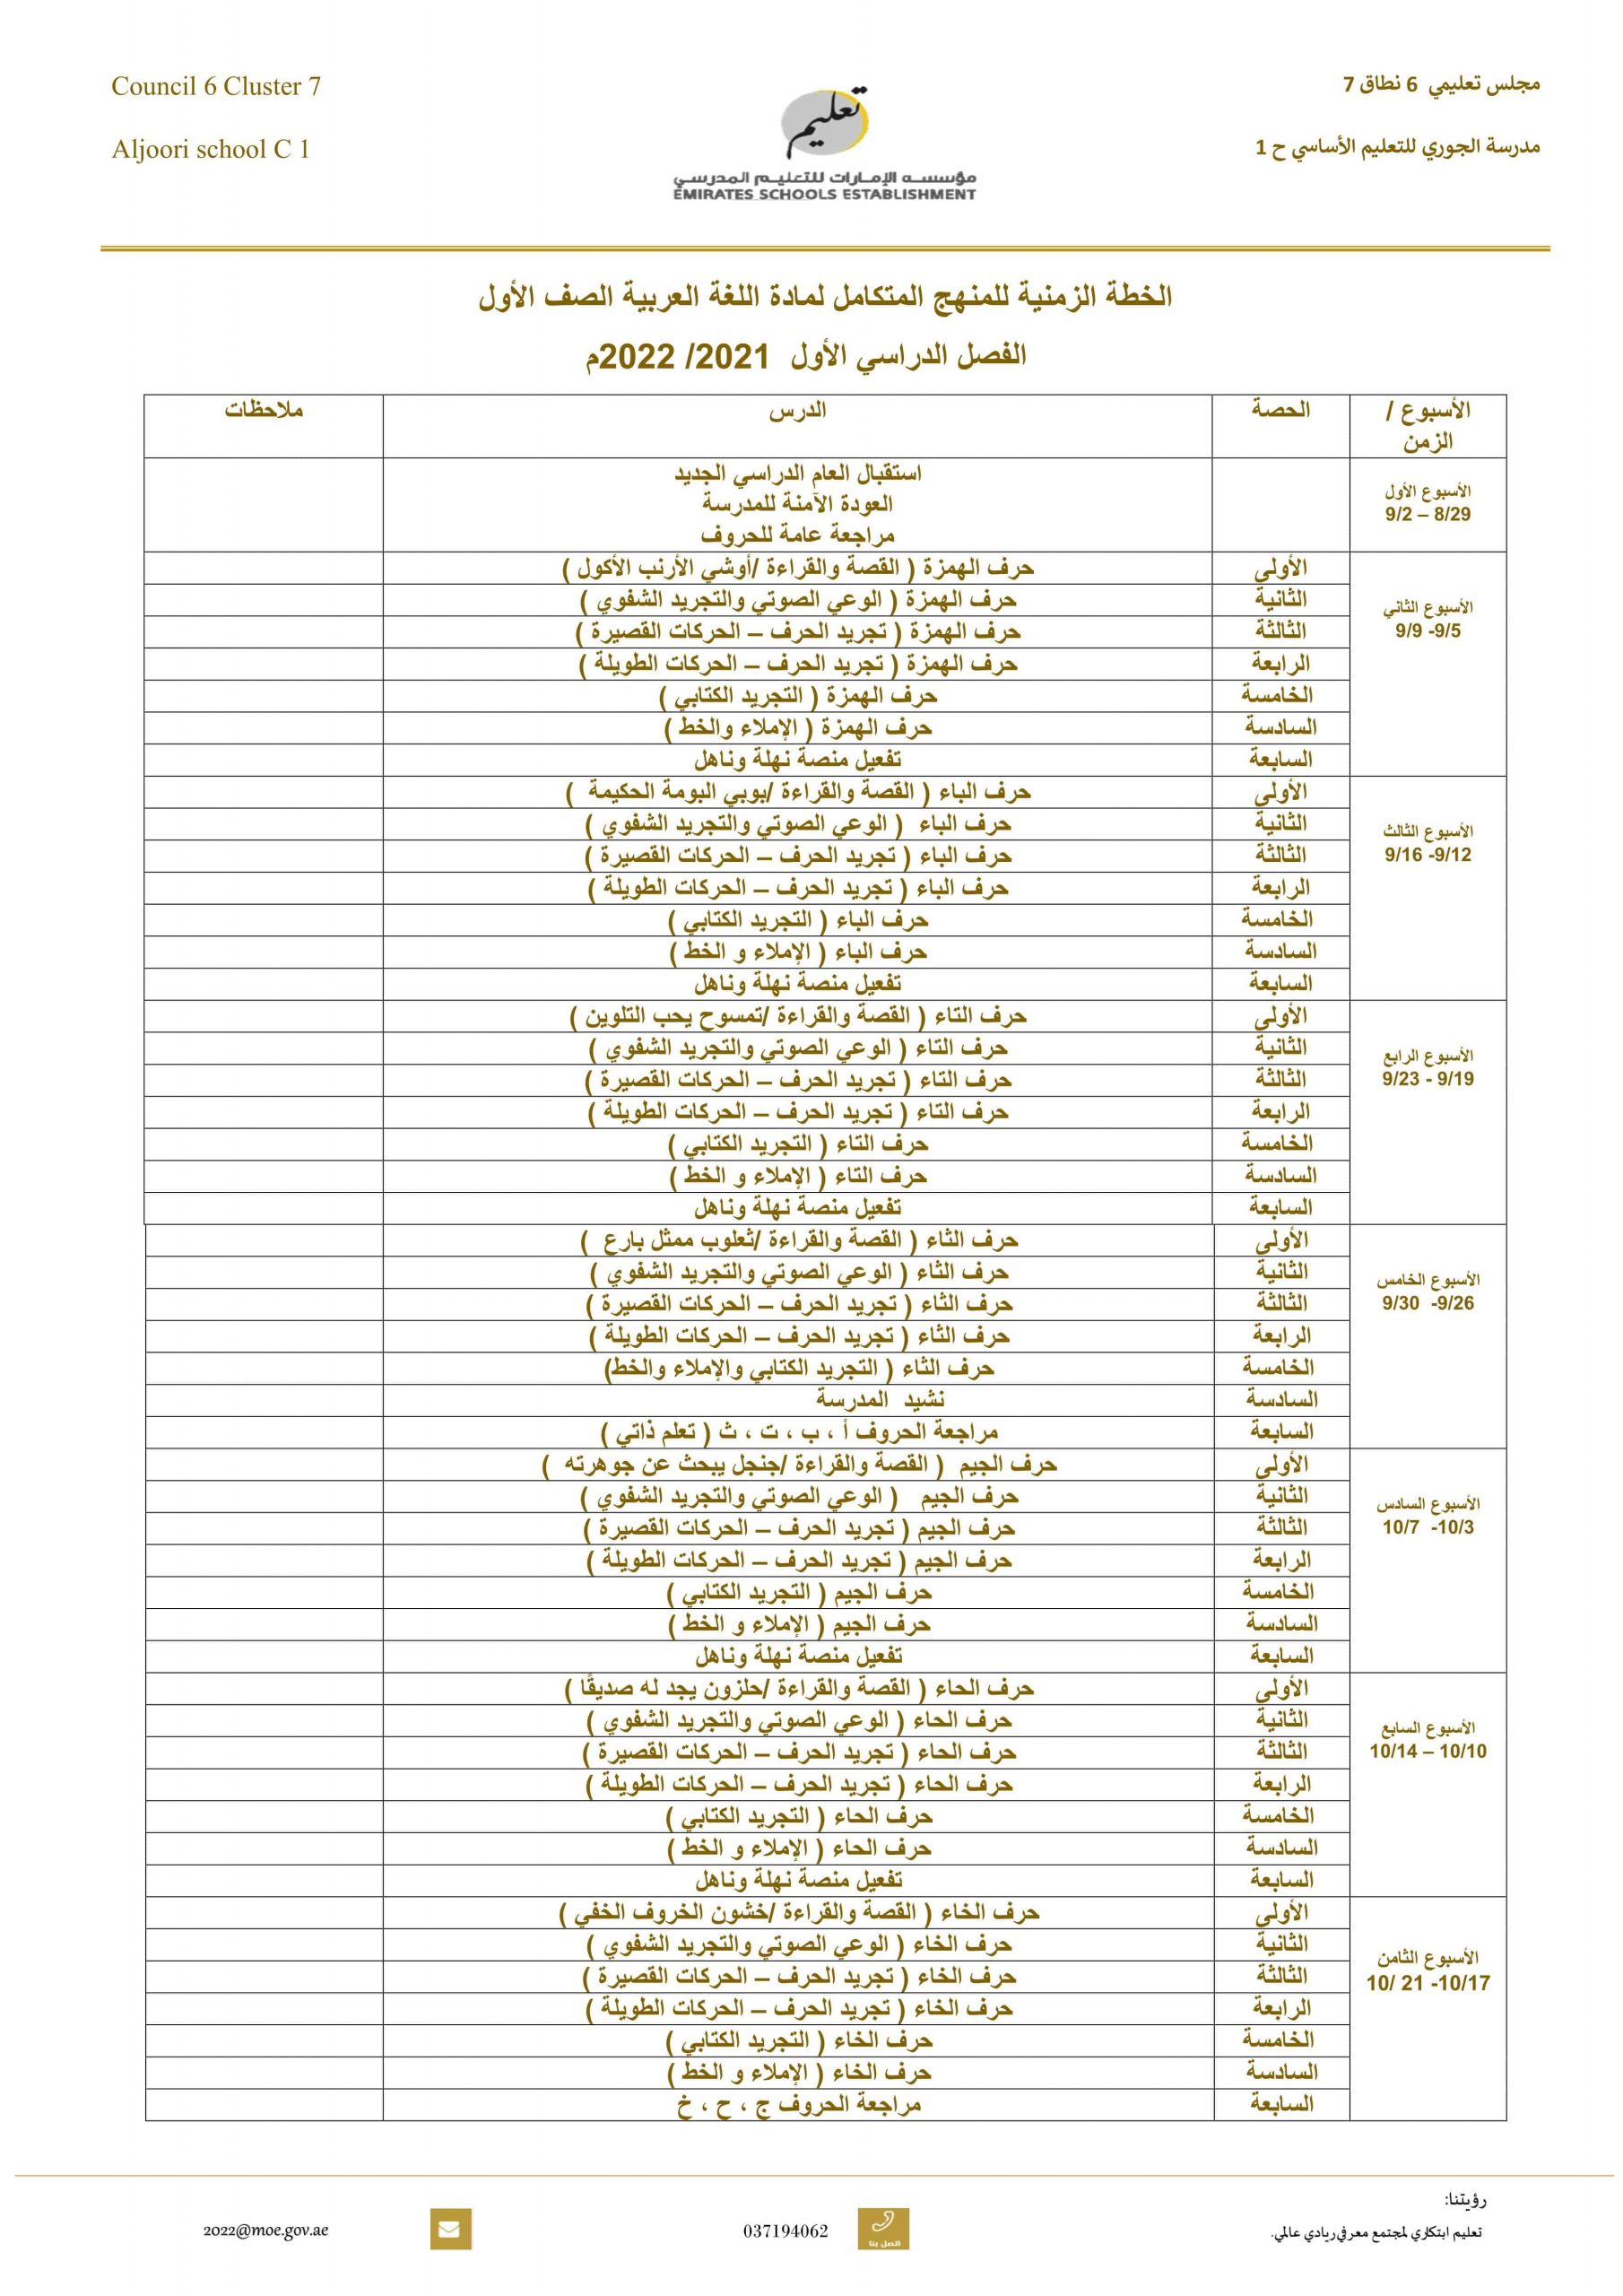 الخطة الزمنية للمنهج المتكامل الفصل الدراسي الأول 2021-2022 الصف الأول مادة اللغة العربية